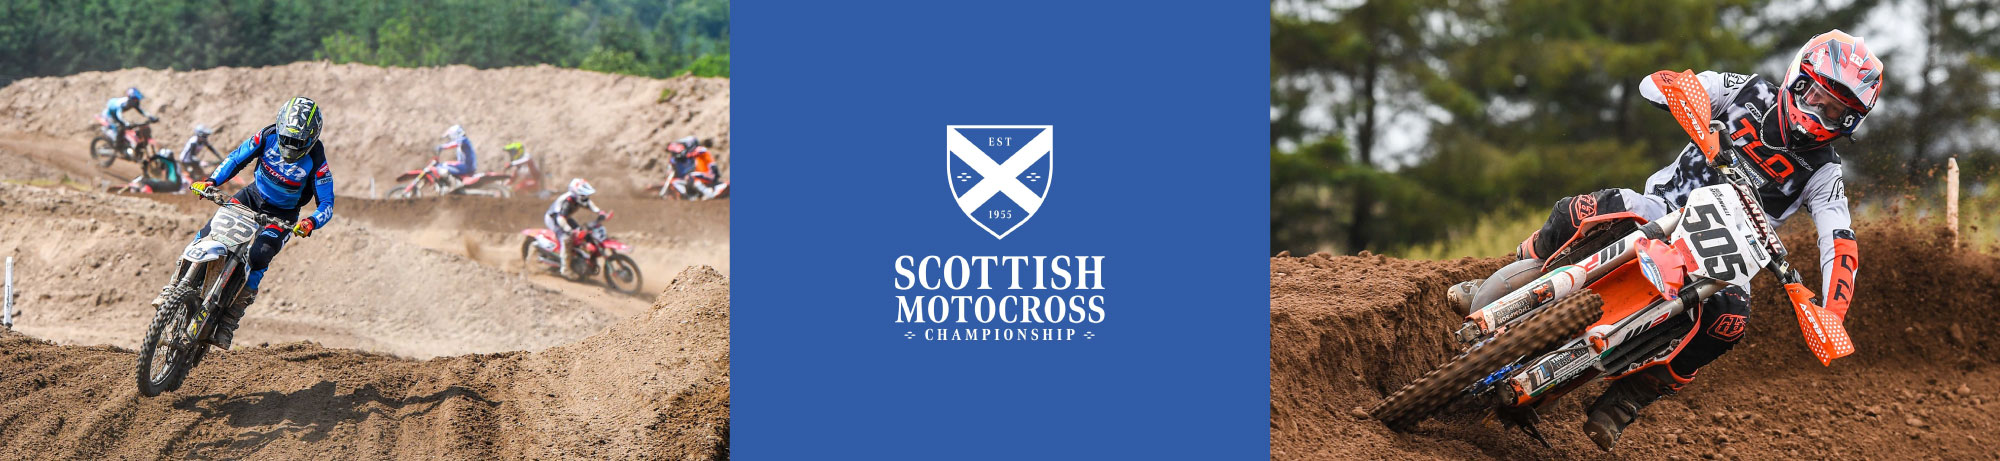 Scottish-Motocross-Banner.jpg